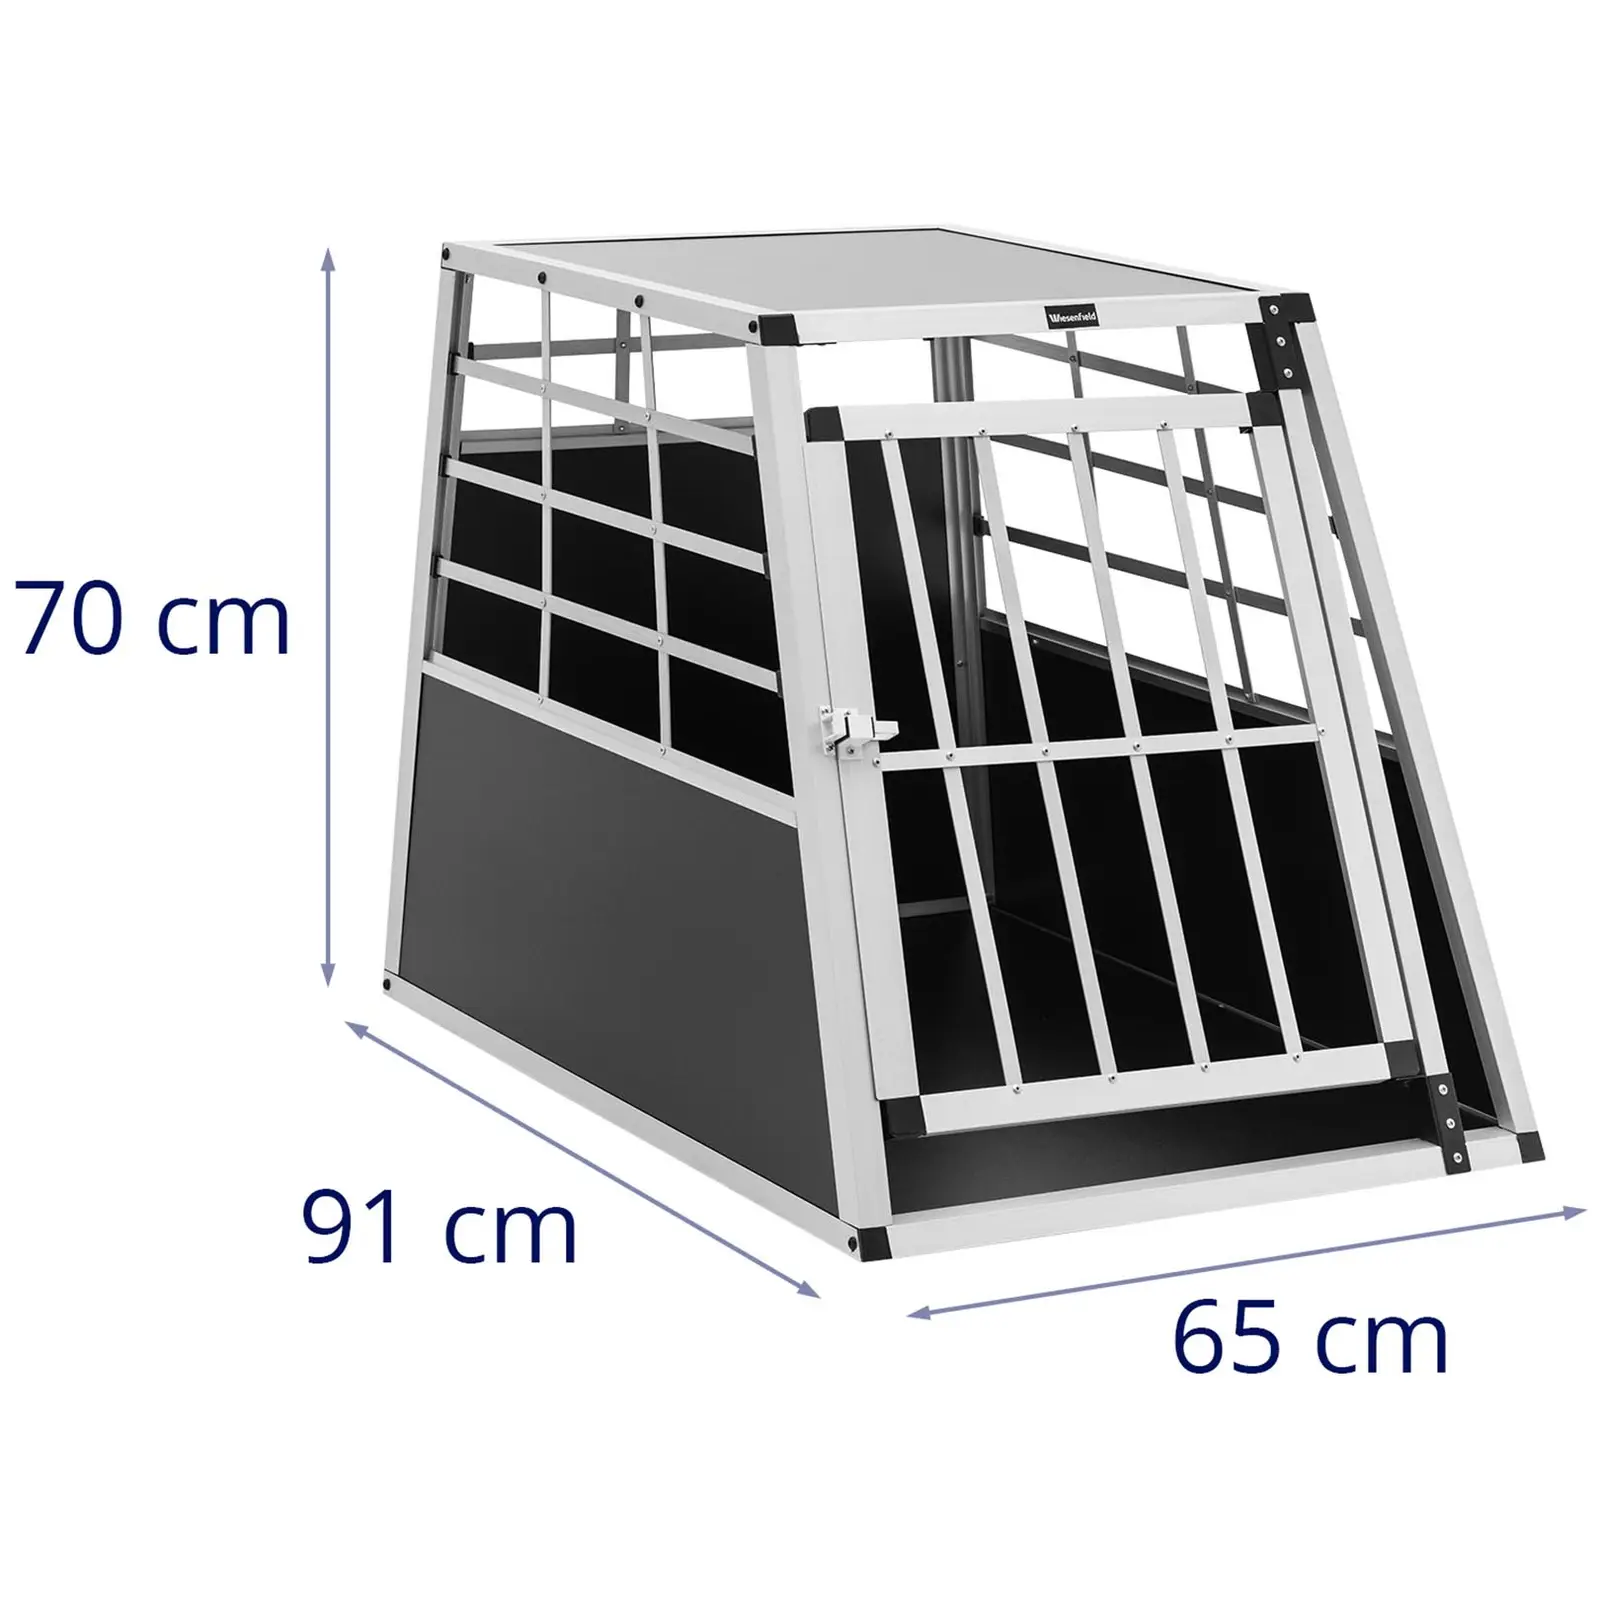 Transporter dla psa - aluminiowy - kształt trapezu - 91 x 65 x 70 cm